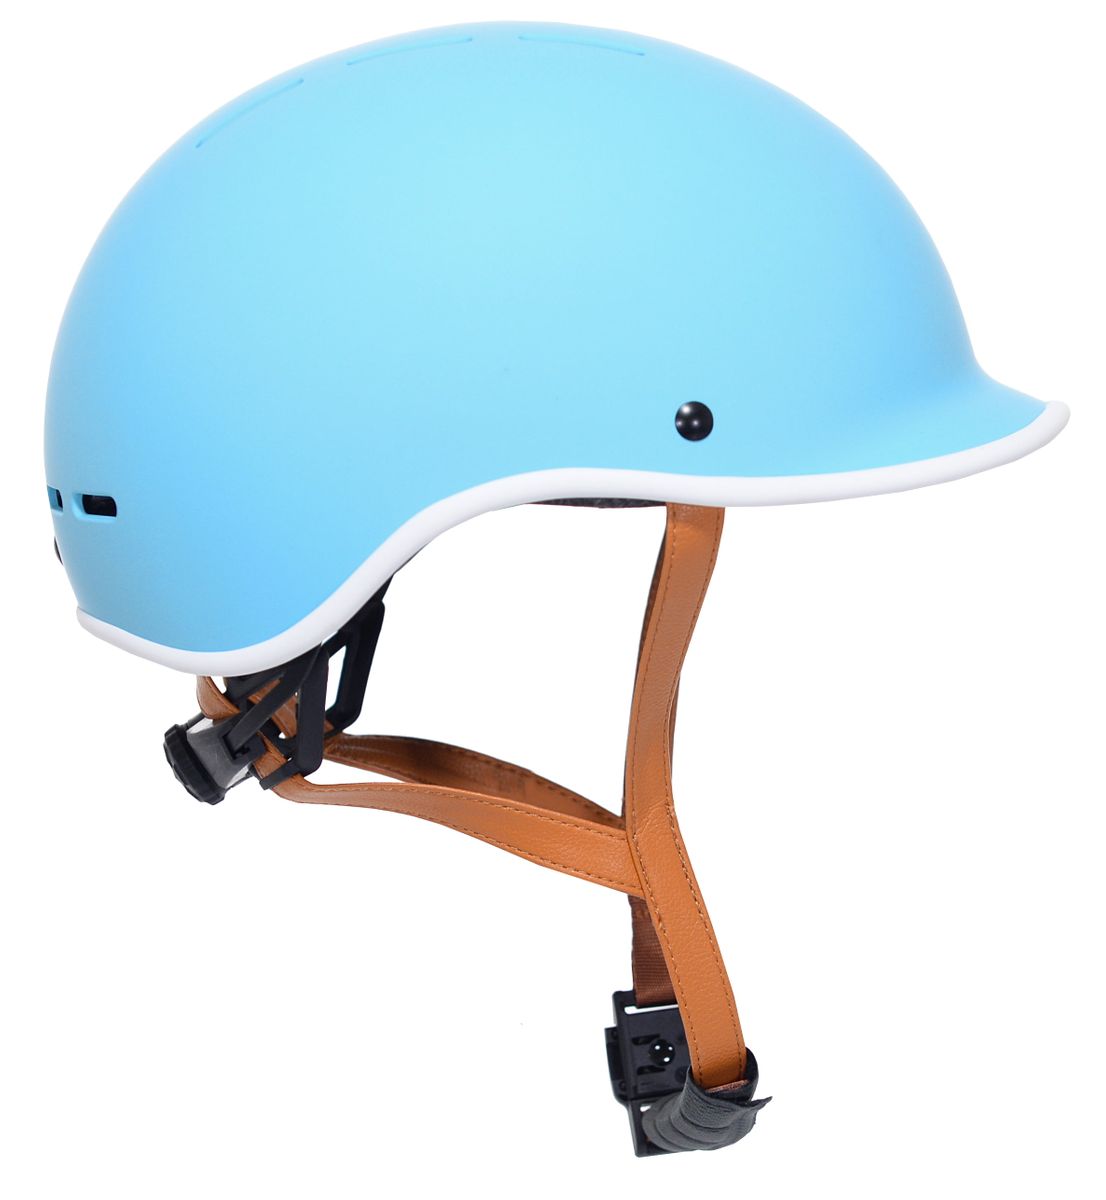 [RDY] [送料無料] ケント、大人用マルチスポーツ通勤自転車ヘルメット、アクア、簡単ツイスト調整、磁気バックルシステム、統合バイザー、ミディアム [楽天海外通販] | Kent, Adult Multi-Sport Co